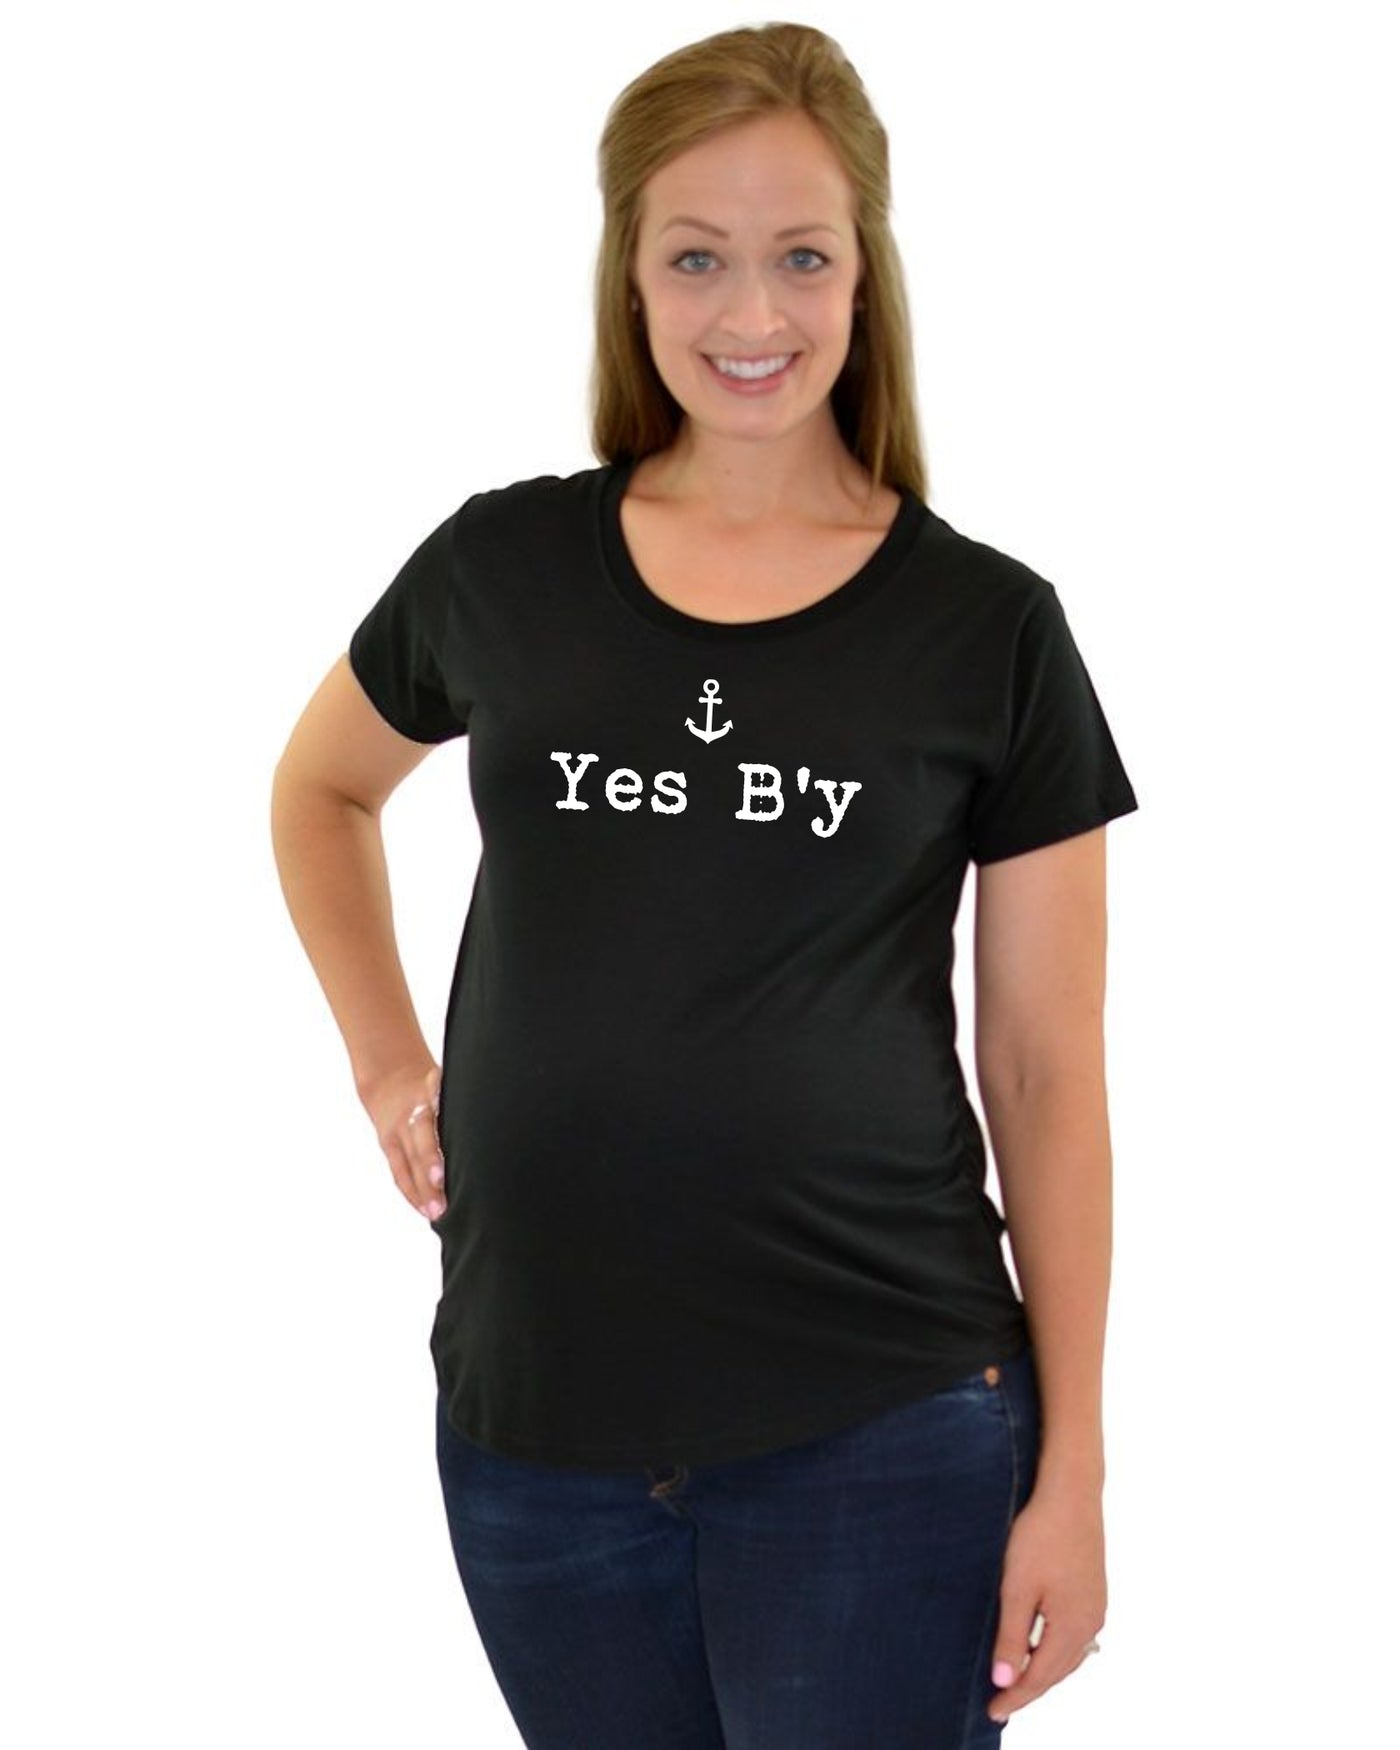 "Yes B'y" Maternity T-Shirt